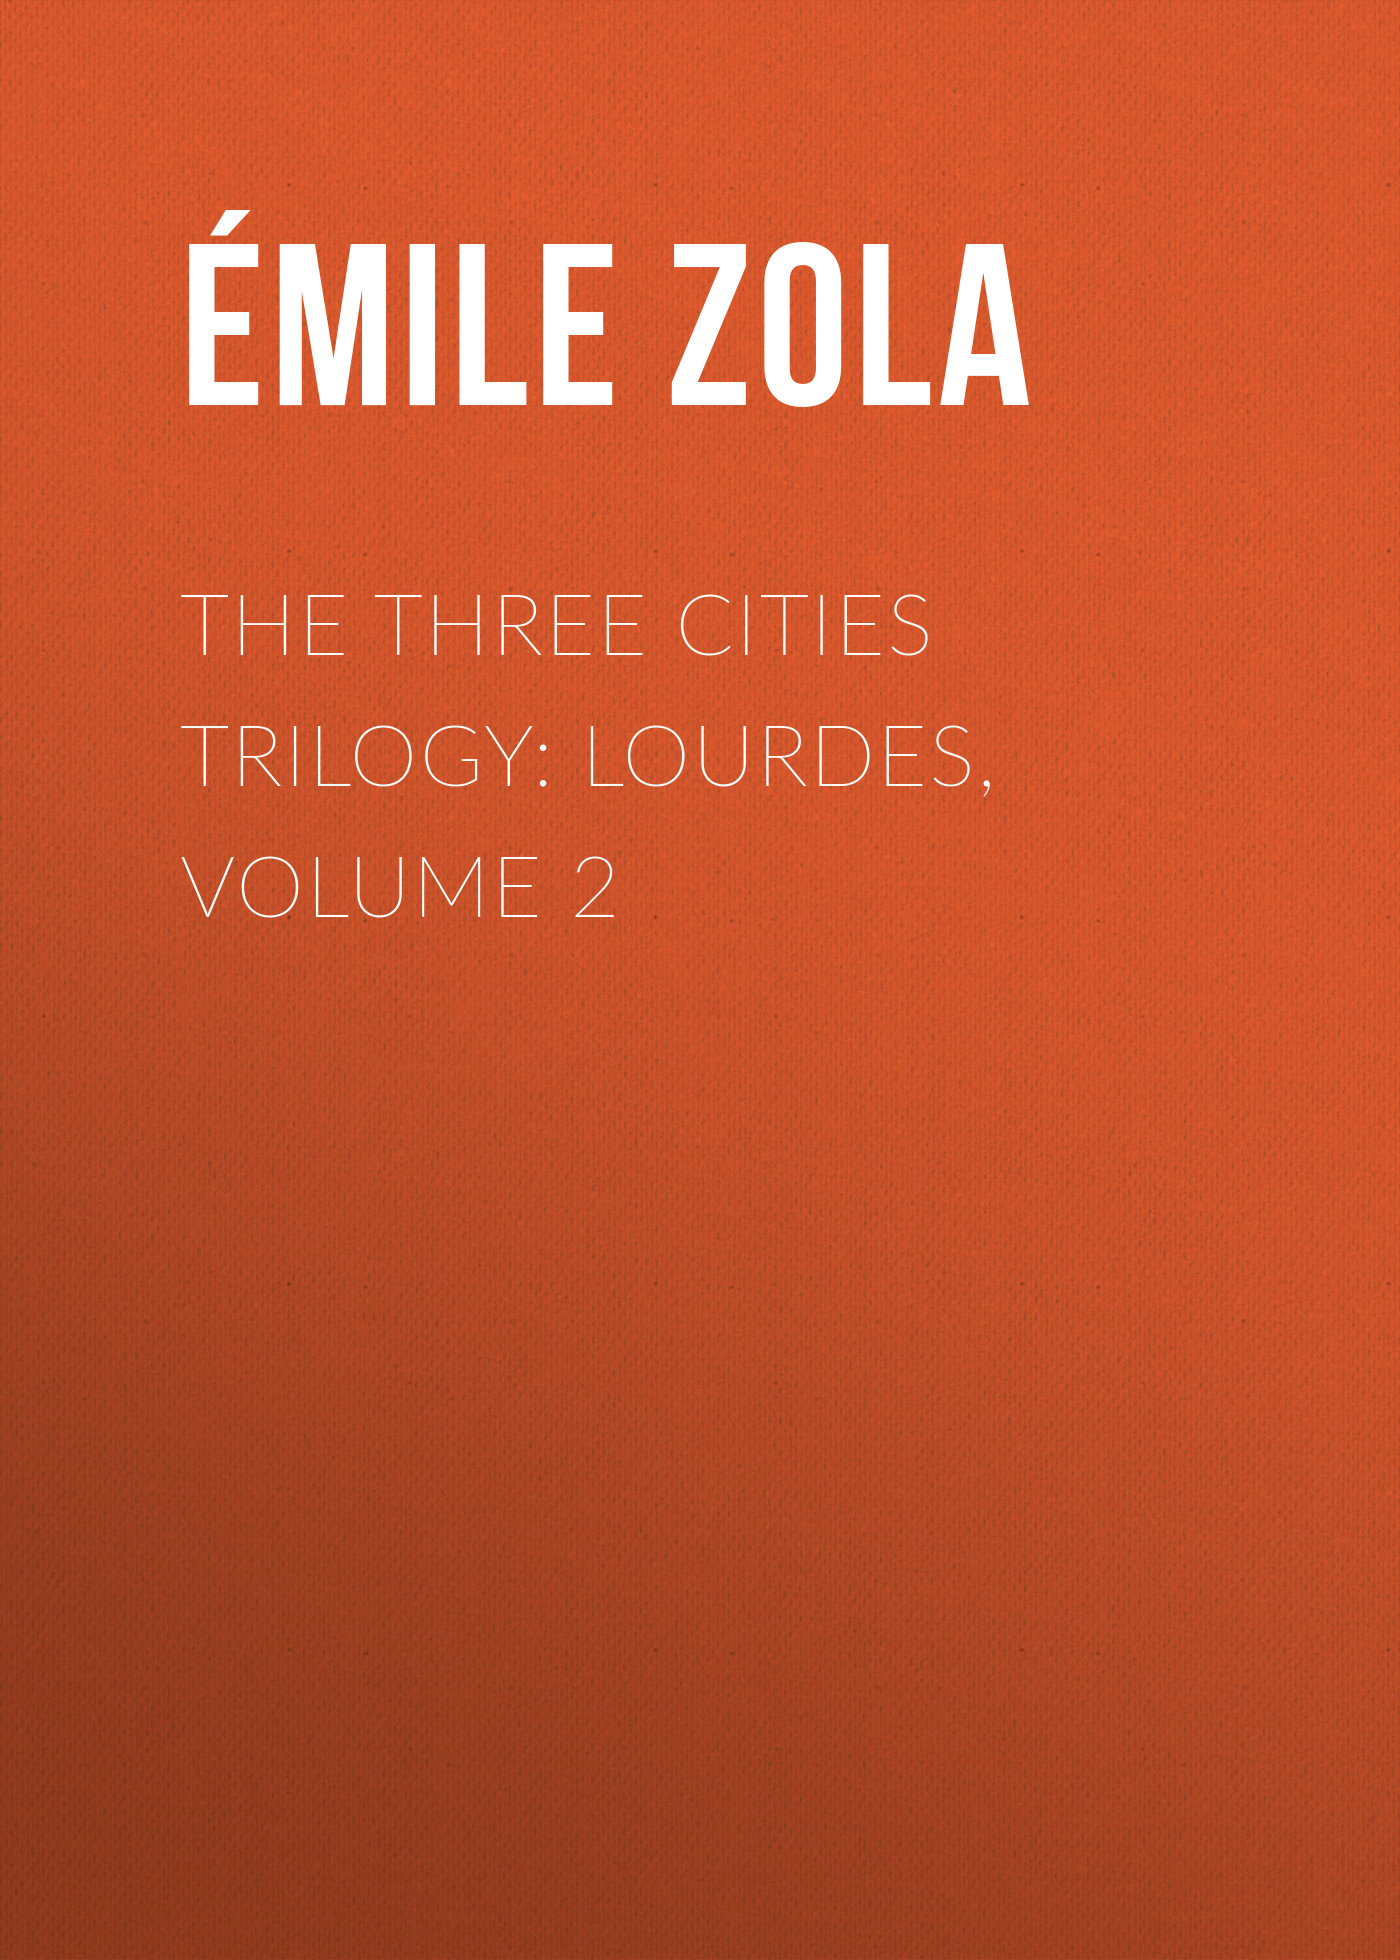 Книга The Three Cities Trilogy: Lourdes, Volume 2 из серии , созданная Émile Zola, может относится к жанру Литература 19 века, Зарубежная старинная литература, Зарубежная классика. Стоимость электронной книги The Three Cities Trilogy: Lourdes, Volume 2 с идентификатором 25559540 составляет 0 руб.